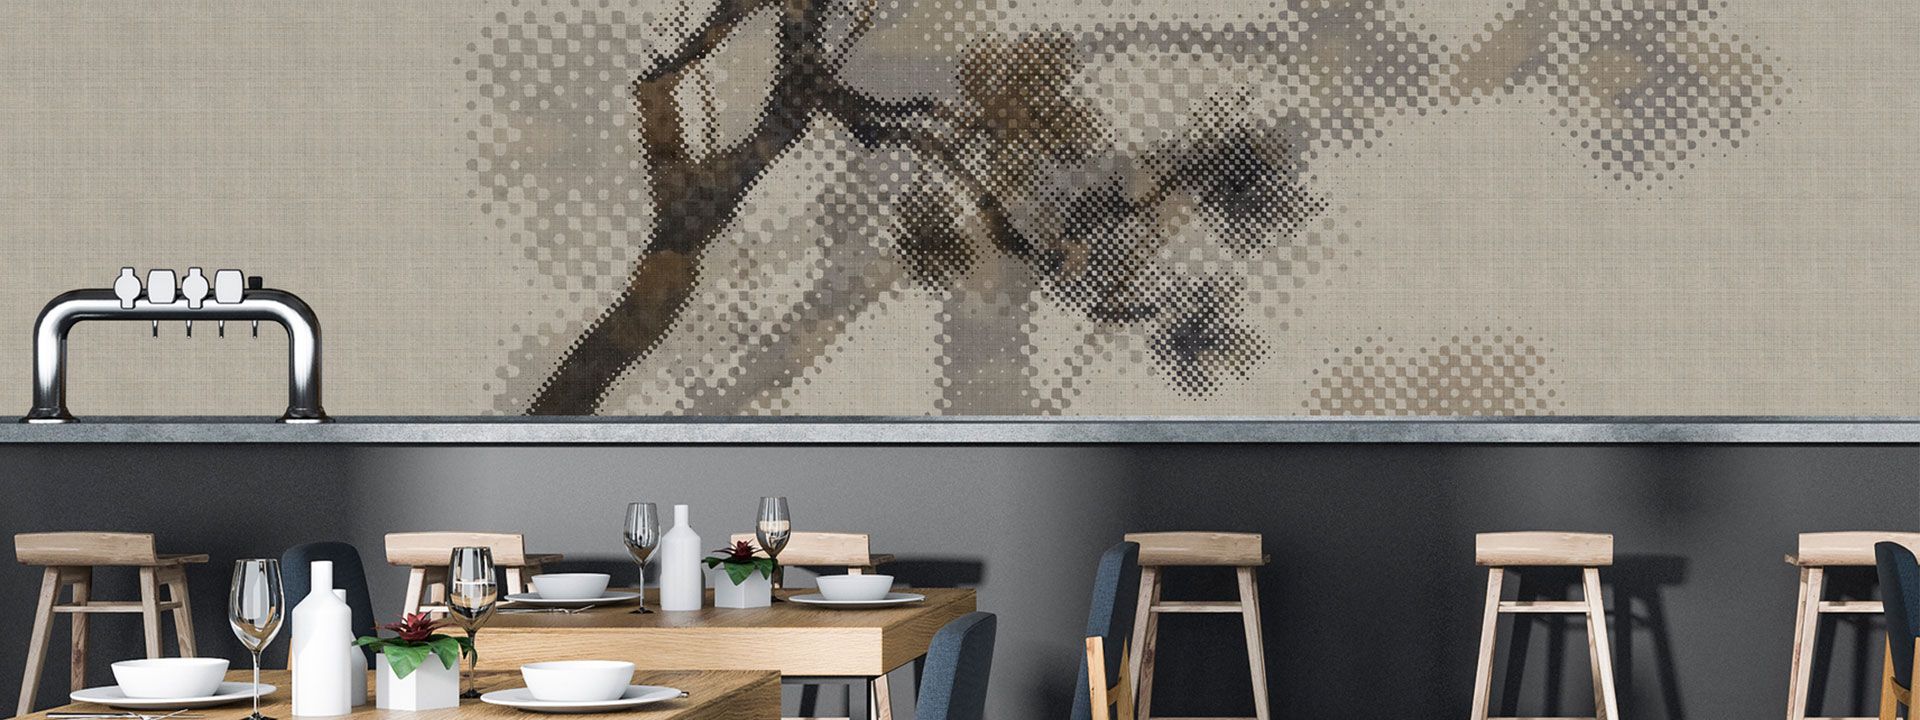 Kantinen-Bar vor tapezierter Wand mit minimalistischem Natur Design DD114197